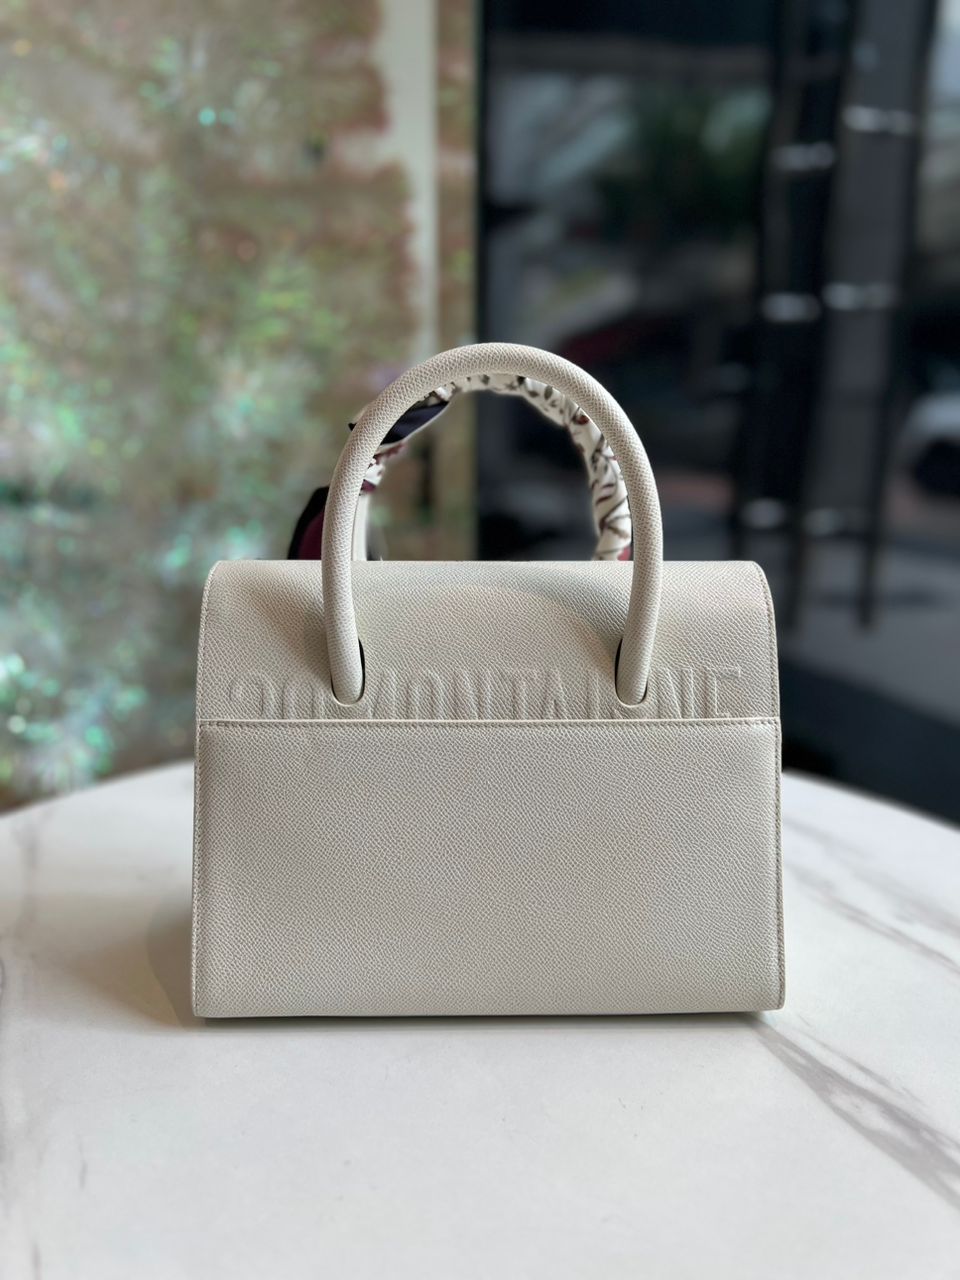 Christian Dior ST Honoré Leather Handbag